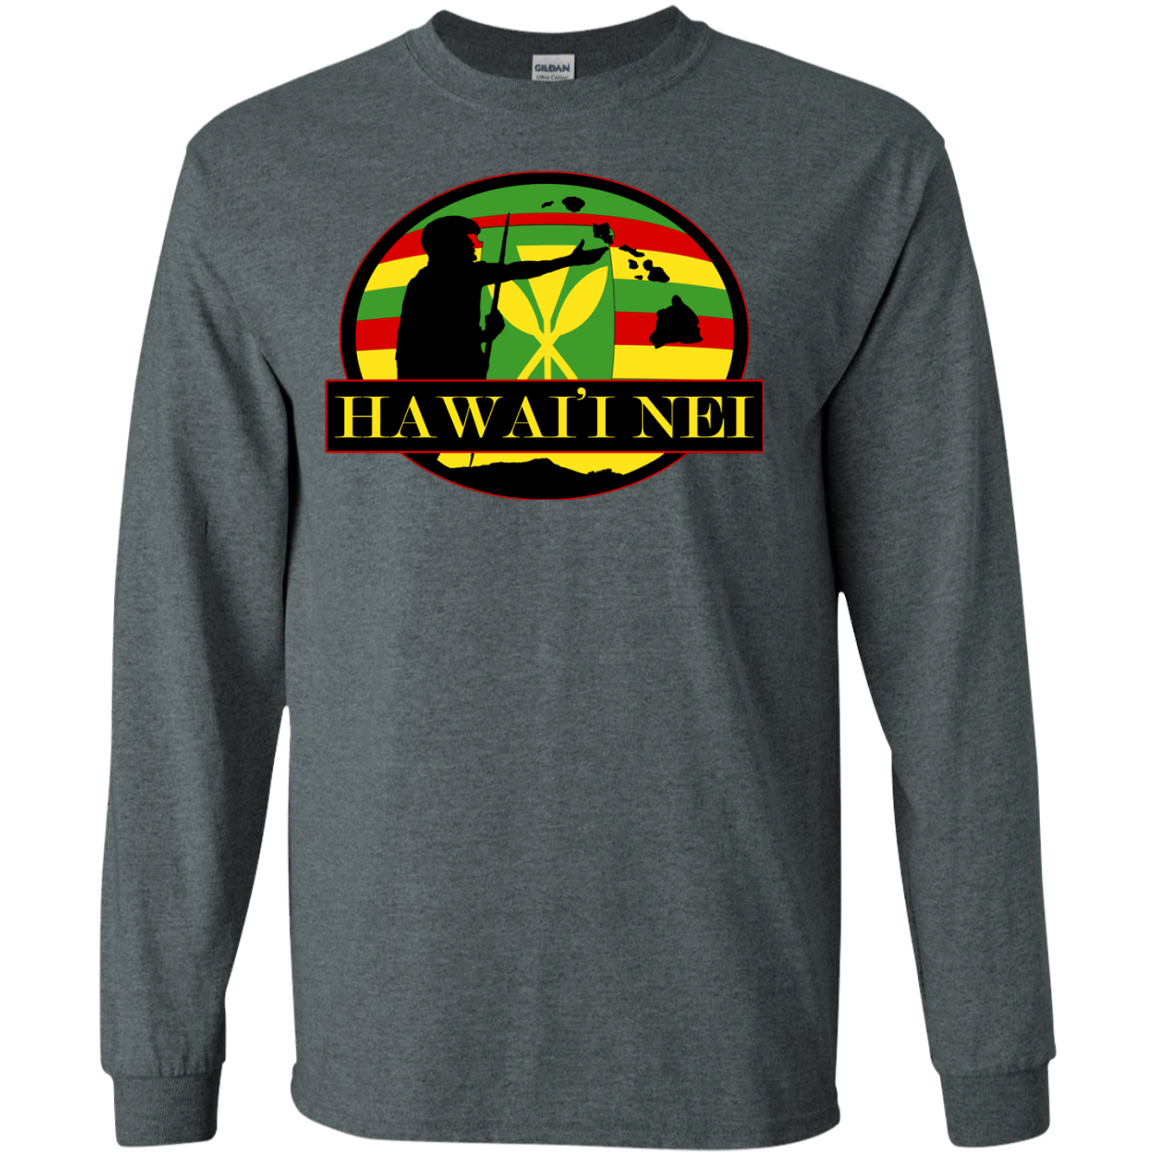 Hawai'i Nei Kanaka Maoli LS Ultra Cotton Tshirt - Hawaii Nei All Day